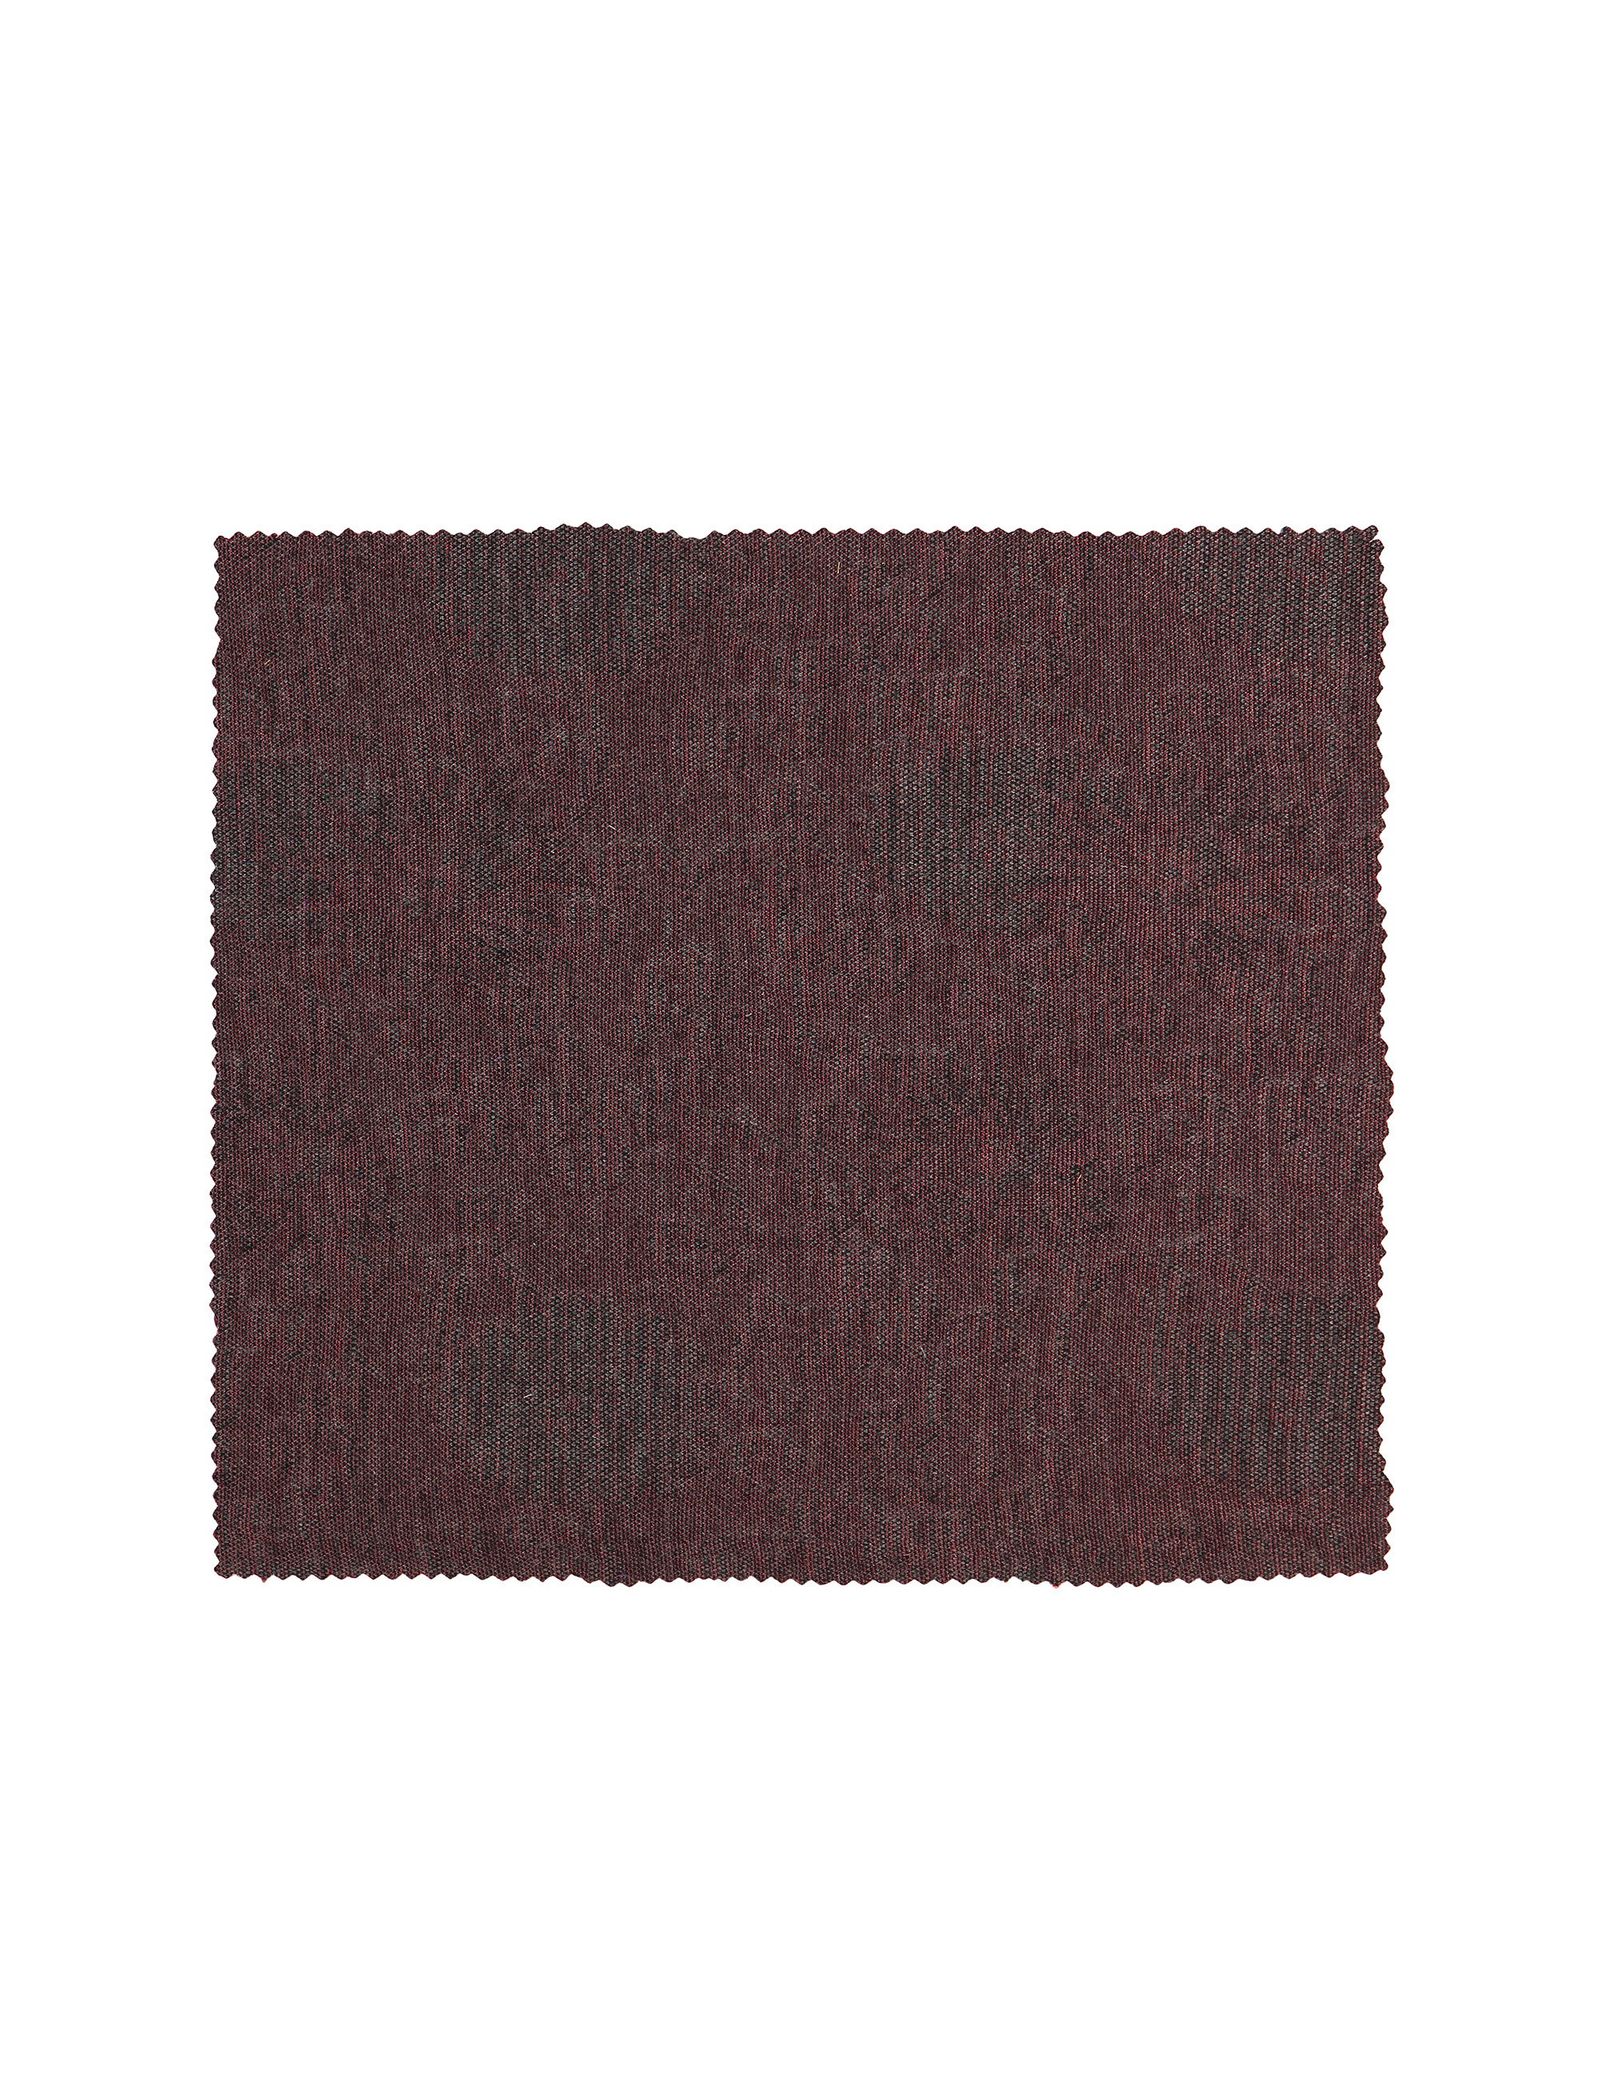 دستمال جیب طرح دار مردانه - خانه مد راد - قرمز و ط.وسي - 4